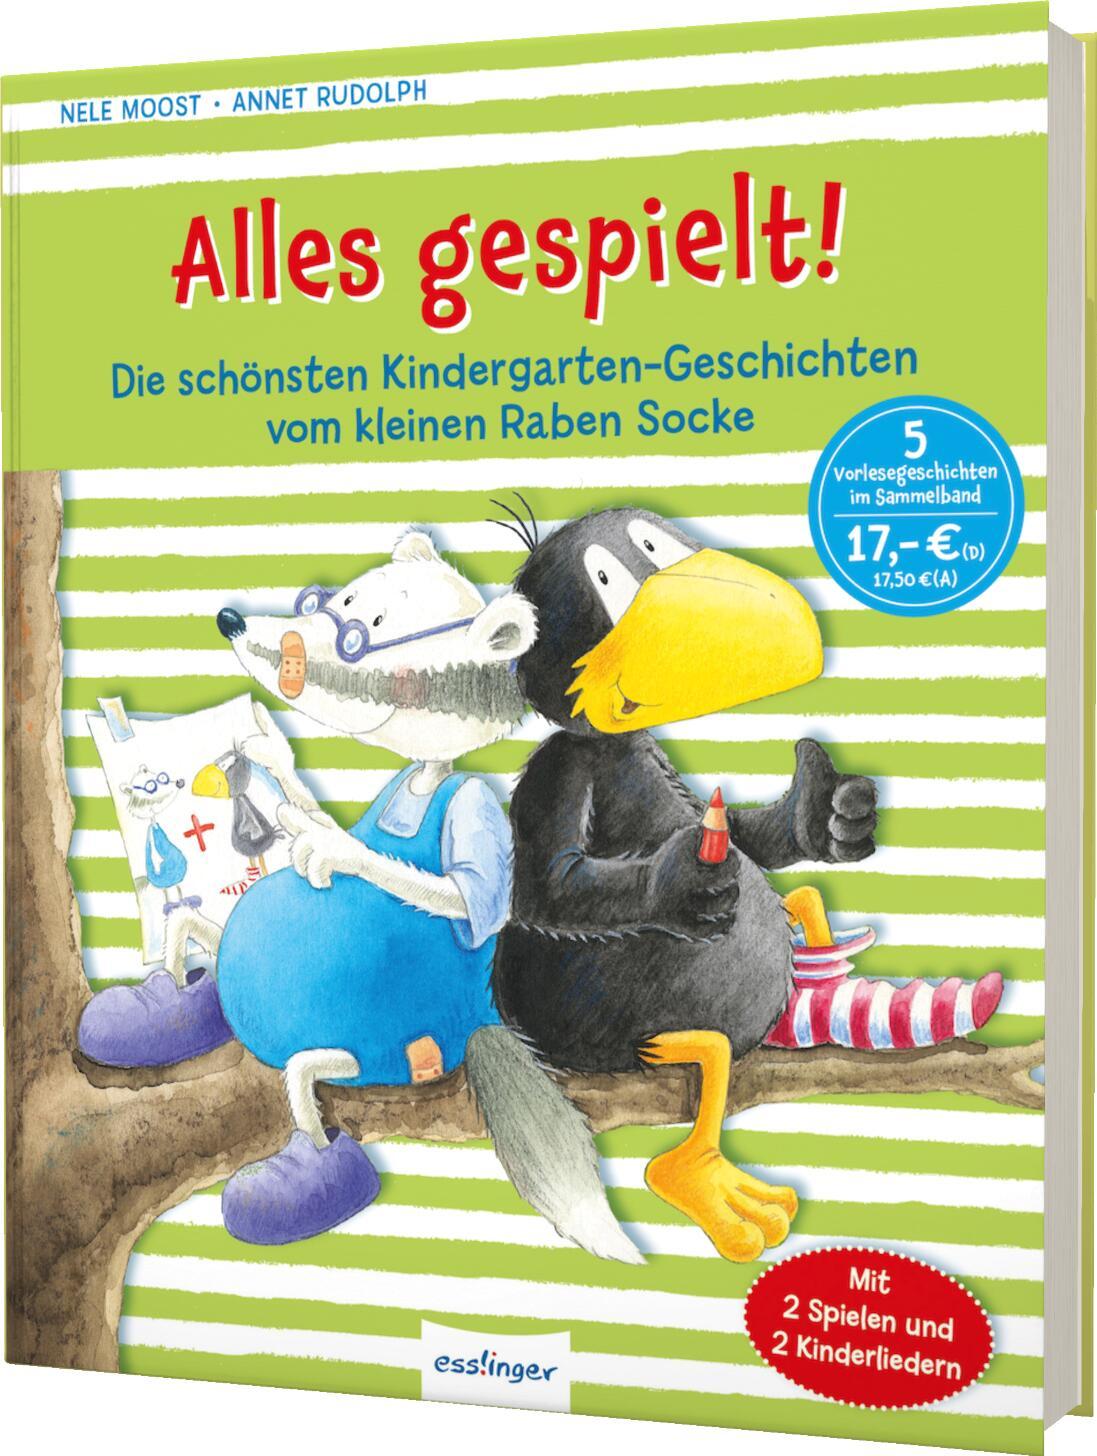 Kniha Der kleine Rabe Socke: Alles gespielt! Annet Rudolph